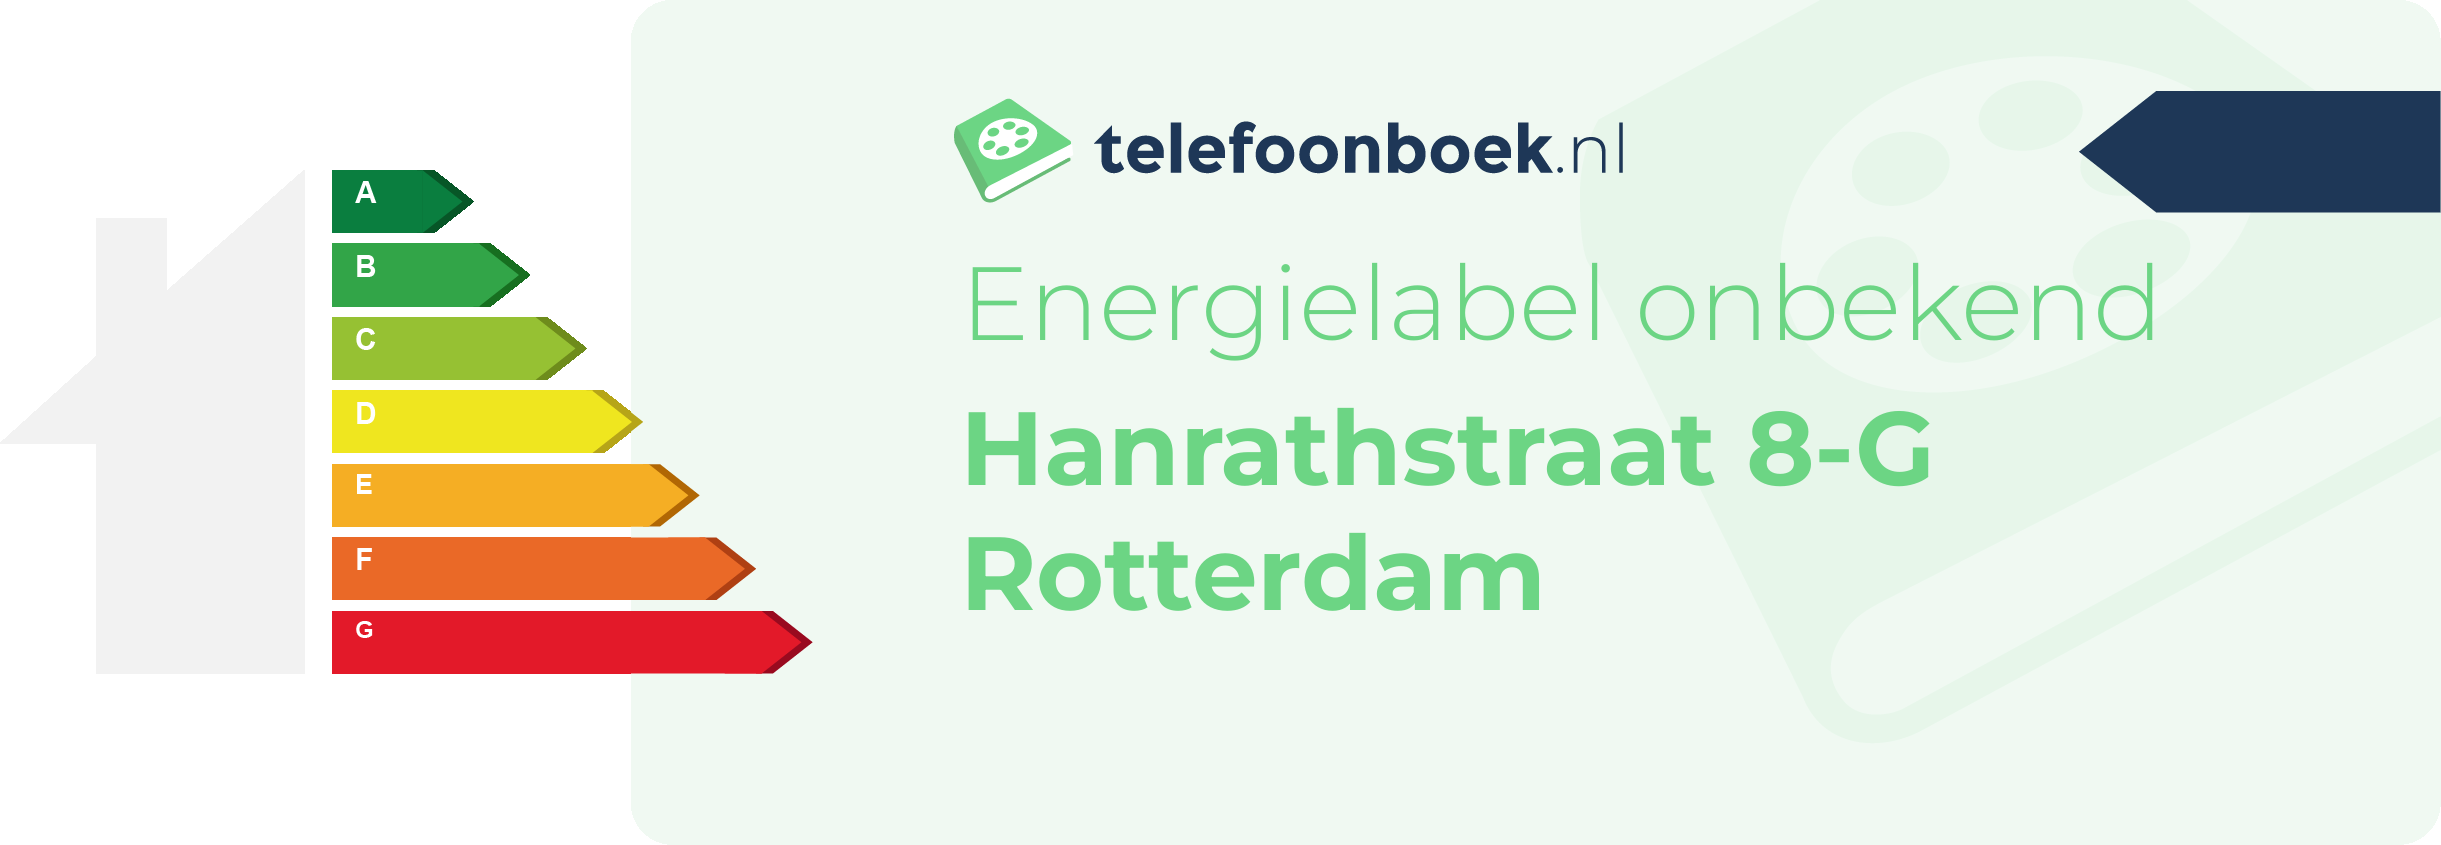 Energielabel Hanrathstraat 8-G Rotterdam